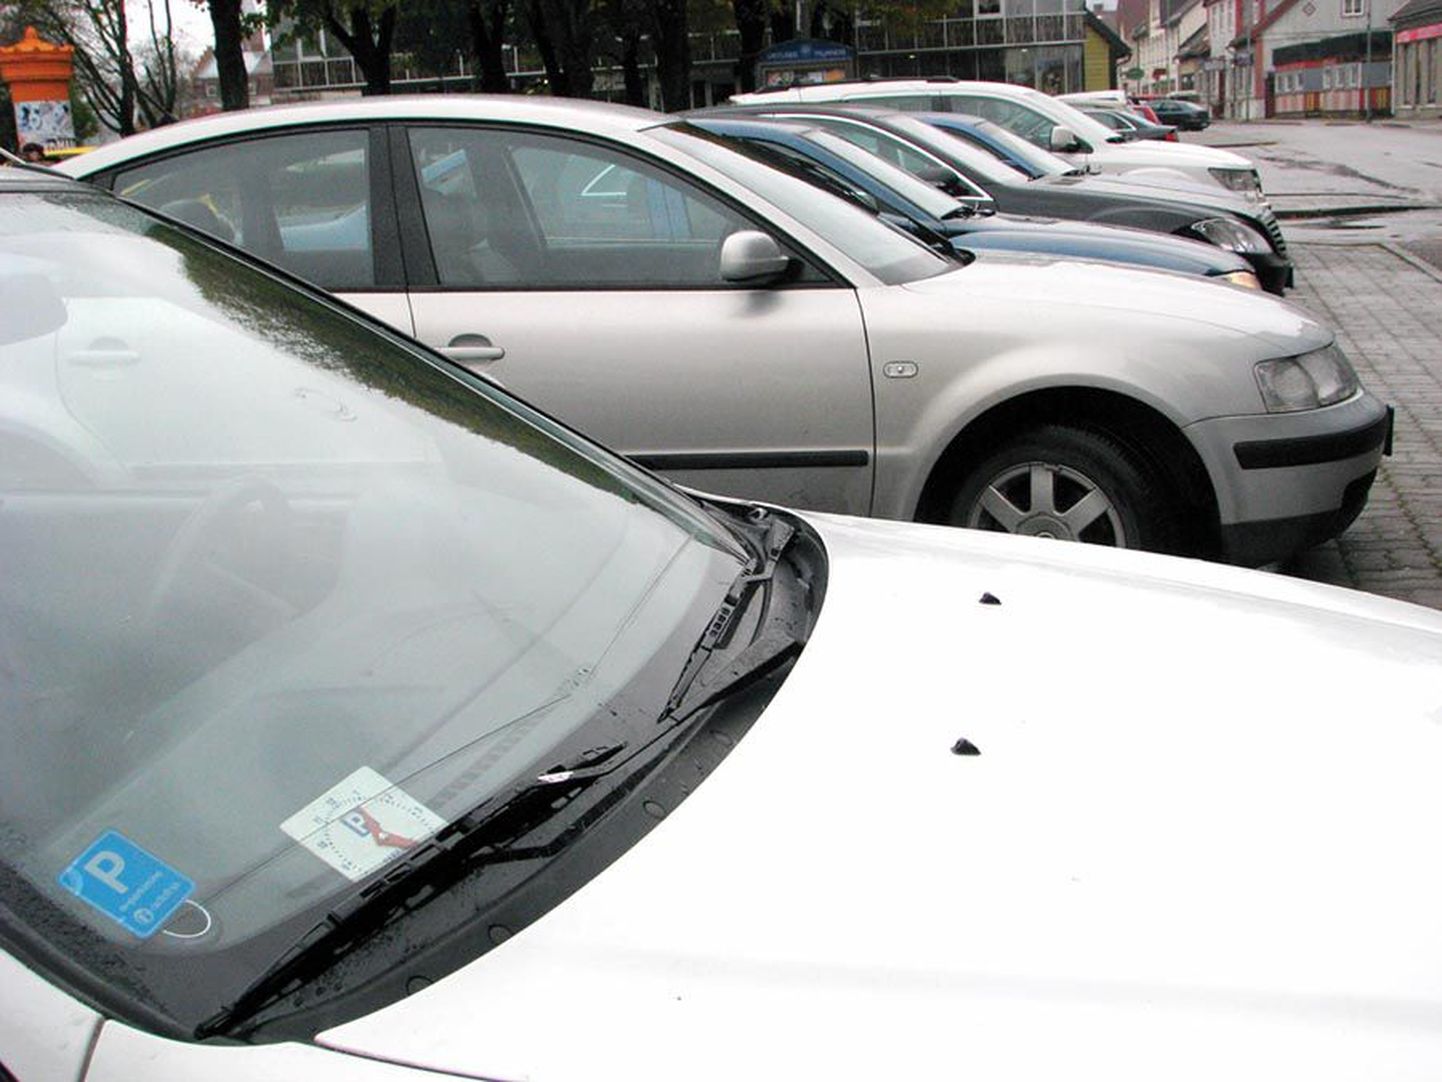 Enamik Viljandi autojuhte teab, et kella kasutades võib kesklinnas kaks tundi tasuta parkida. Sellest hoolimata on kontrollijad leidnud aastaga üle 1500 auto, mille juhid korra vastu eksisid.